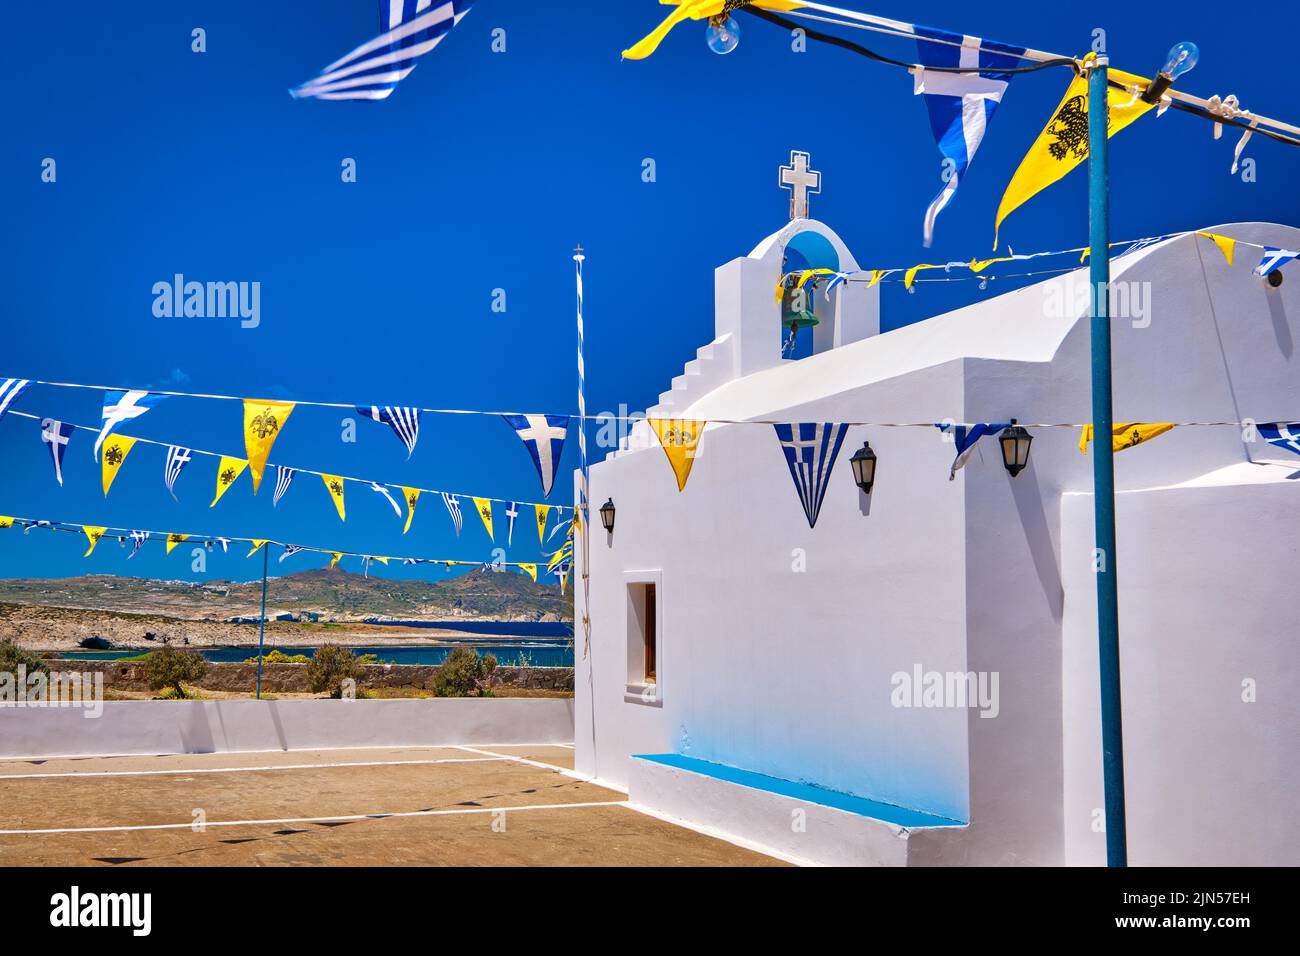 Weiße griechisch-orthodoxe Kapelle oder Kirche auf dem Hügel gegen klaren blauen Himmel an sonnigen Tagen, dekoriert griechische nationale, griechisch-orthodoxe Flagge. Milos, Griechenland Stockfoto